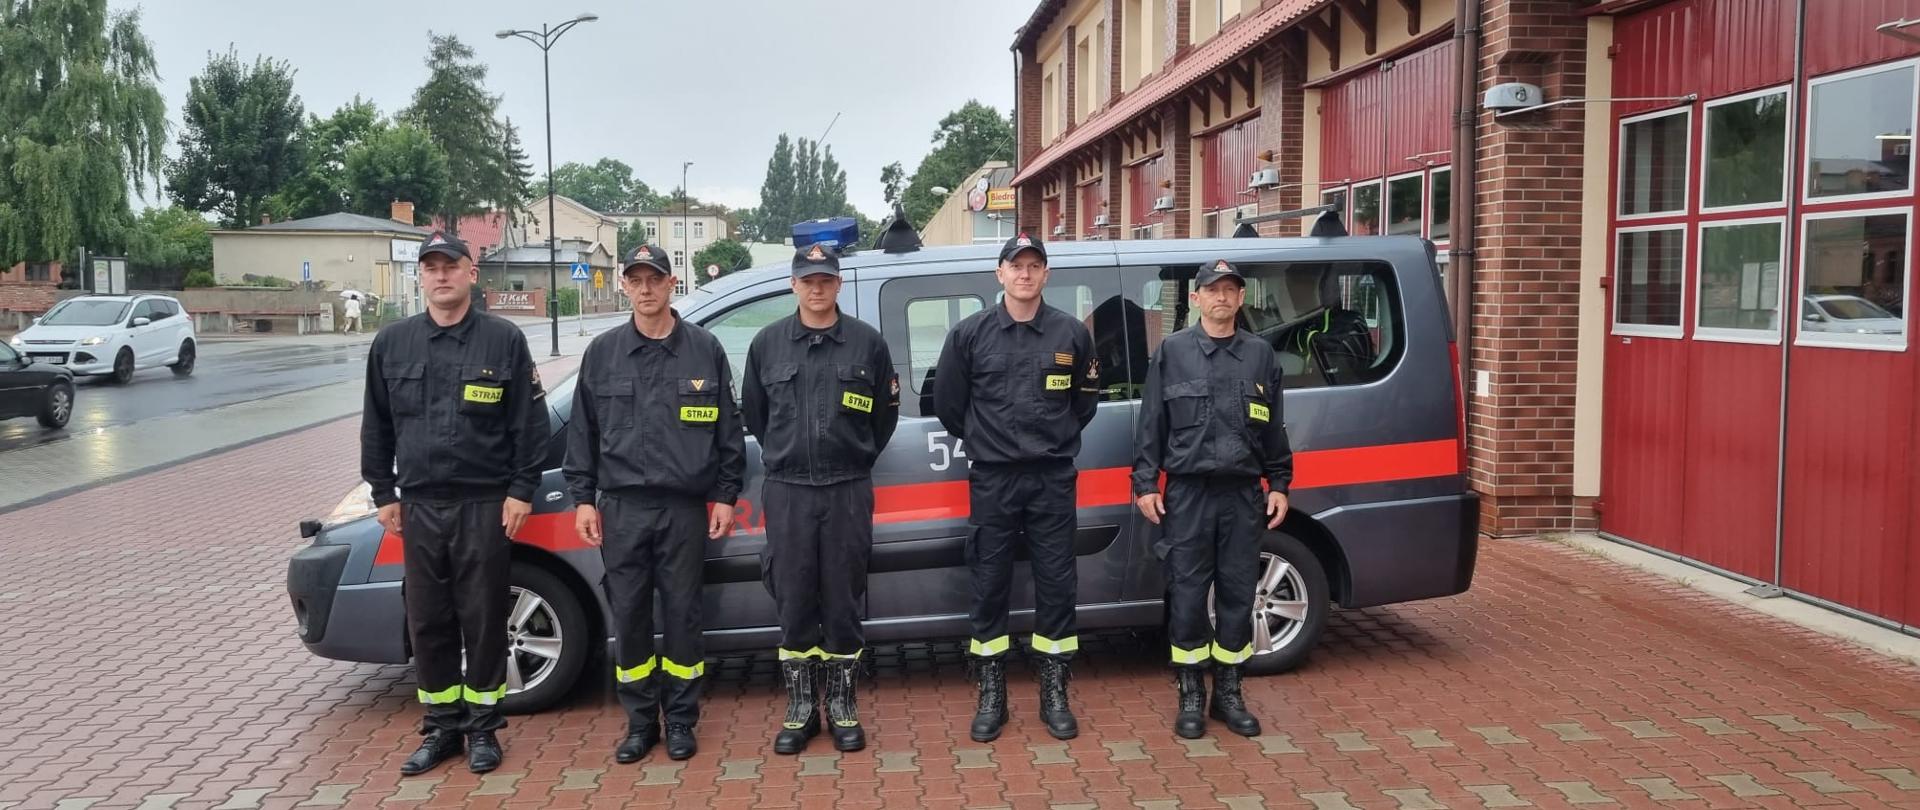 Zdjęcie przedstawia 5 strażaków, którzy uczestniczą w odprawie dotyczącej wyjazdu modułu GFFFV do walki z pożarami w Grecji. Na zdjęciu widzimy strażaków przed wyjazdem busem do punktu koncentracji sił i środków. Zdjęcie wykonane w porze dziennej przed placem Komendy.